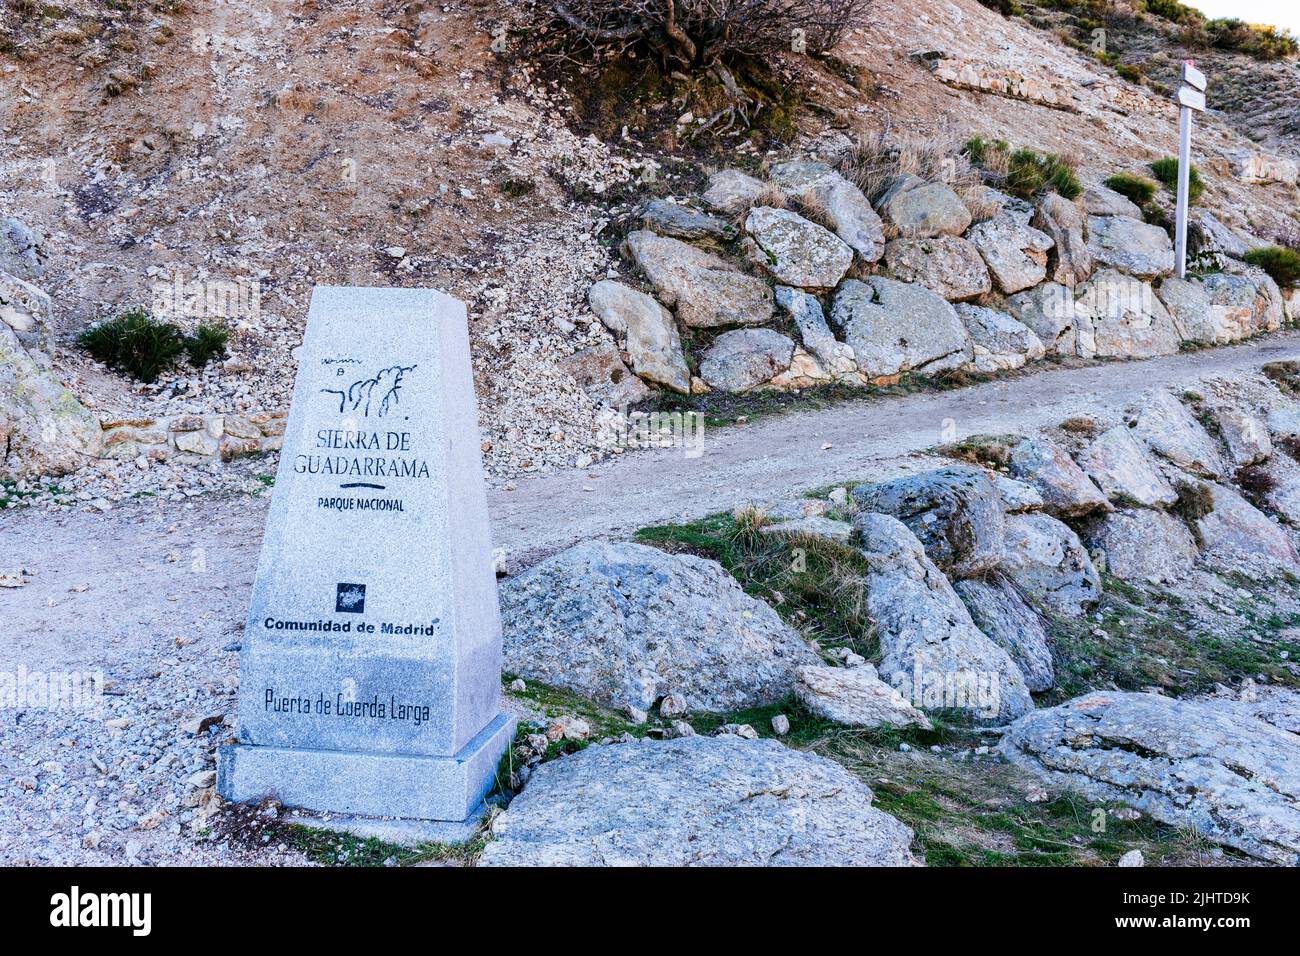 Granite monolith indicating the beginning of the La Cuerda Larga route. Comunidad de Madrid, Spain, Europe Stock Photo